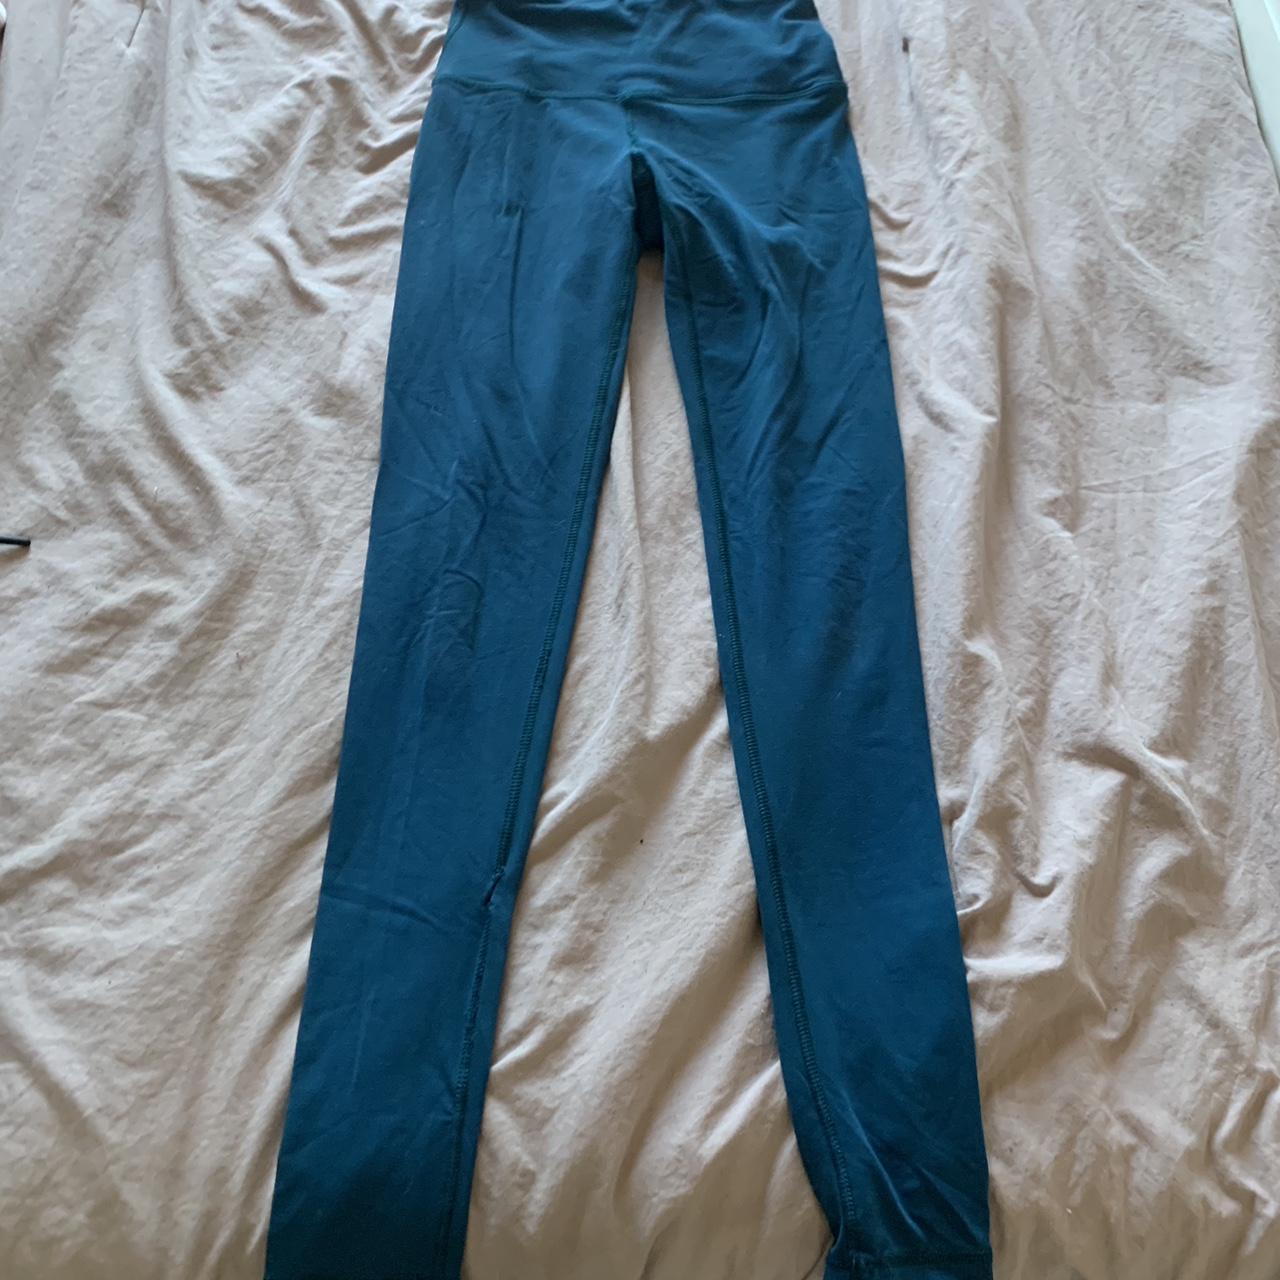 Old Navy blue leggings - Depop